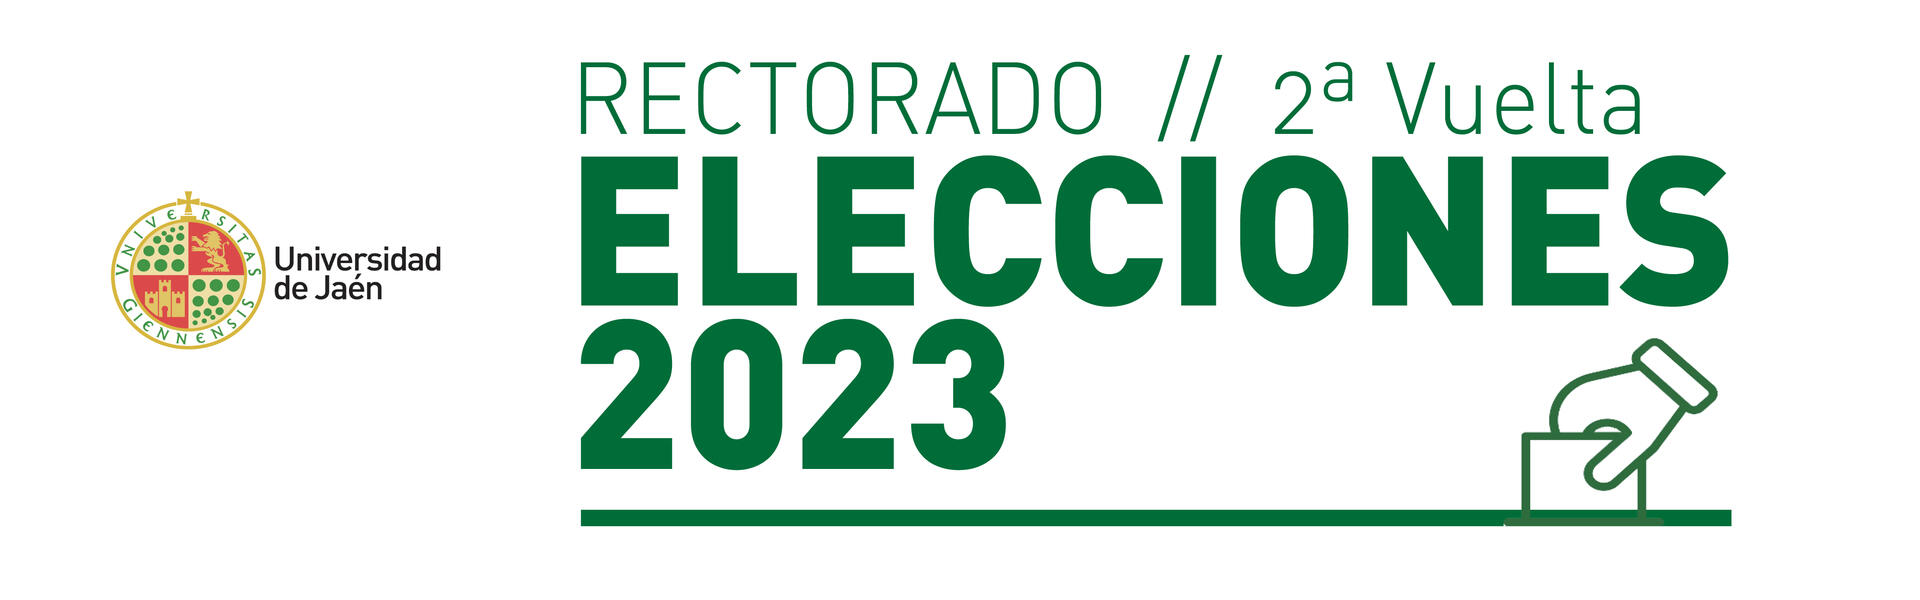 Elecciones 2023 a Rectorado de la Universidad de Jaén